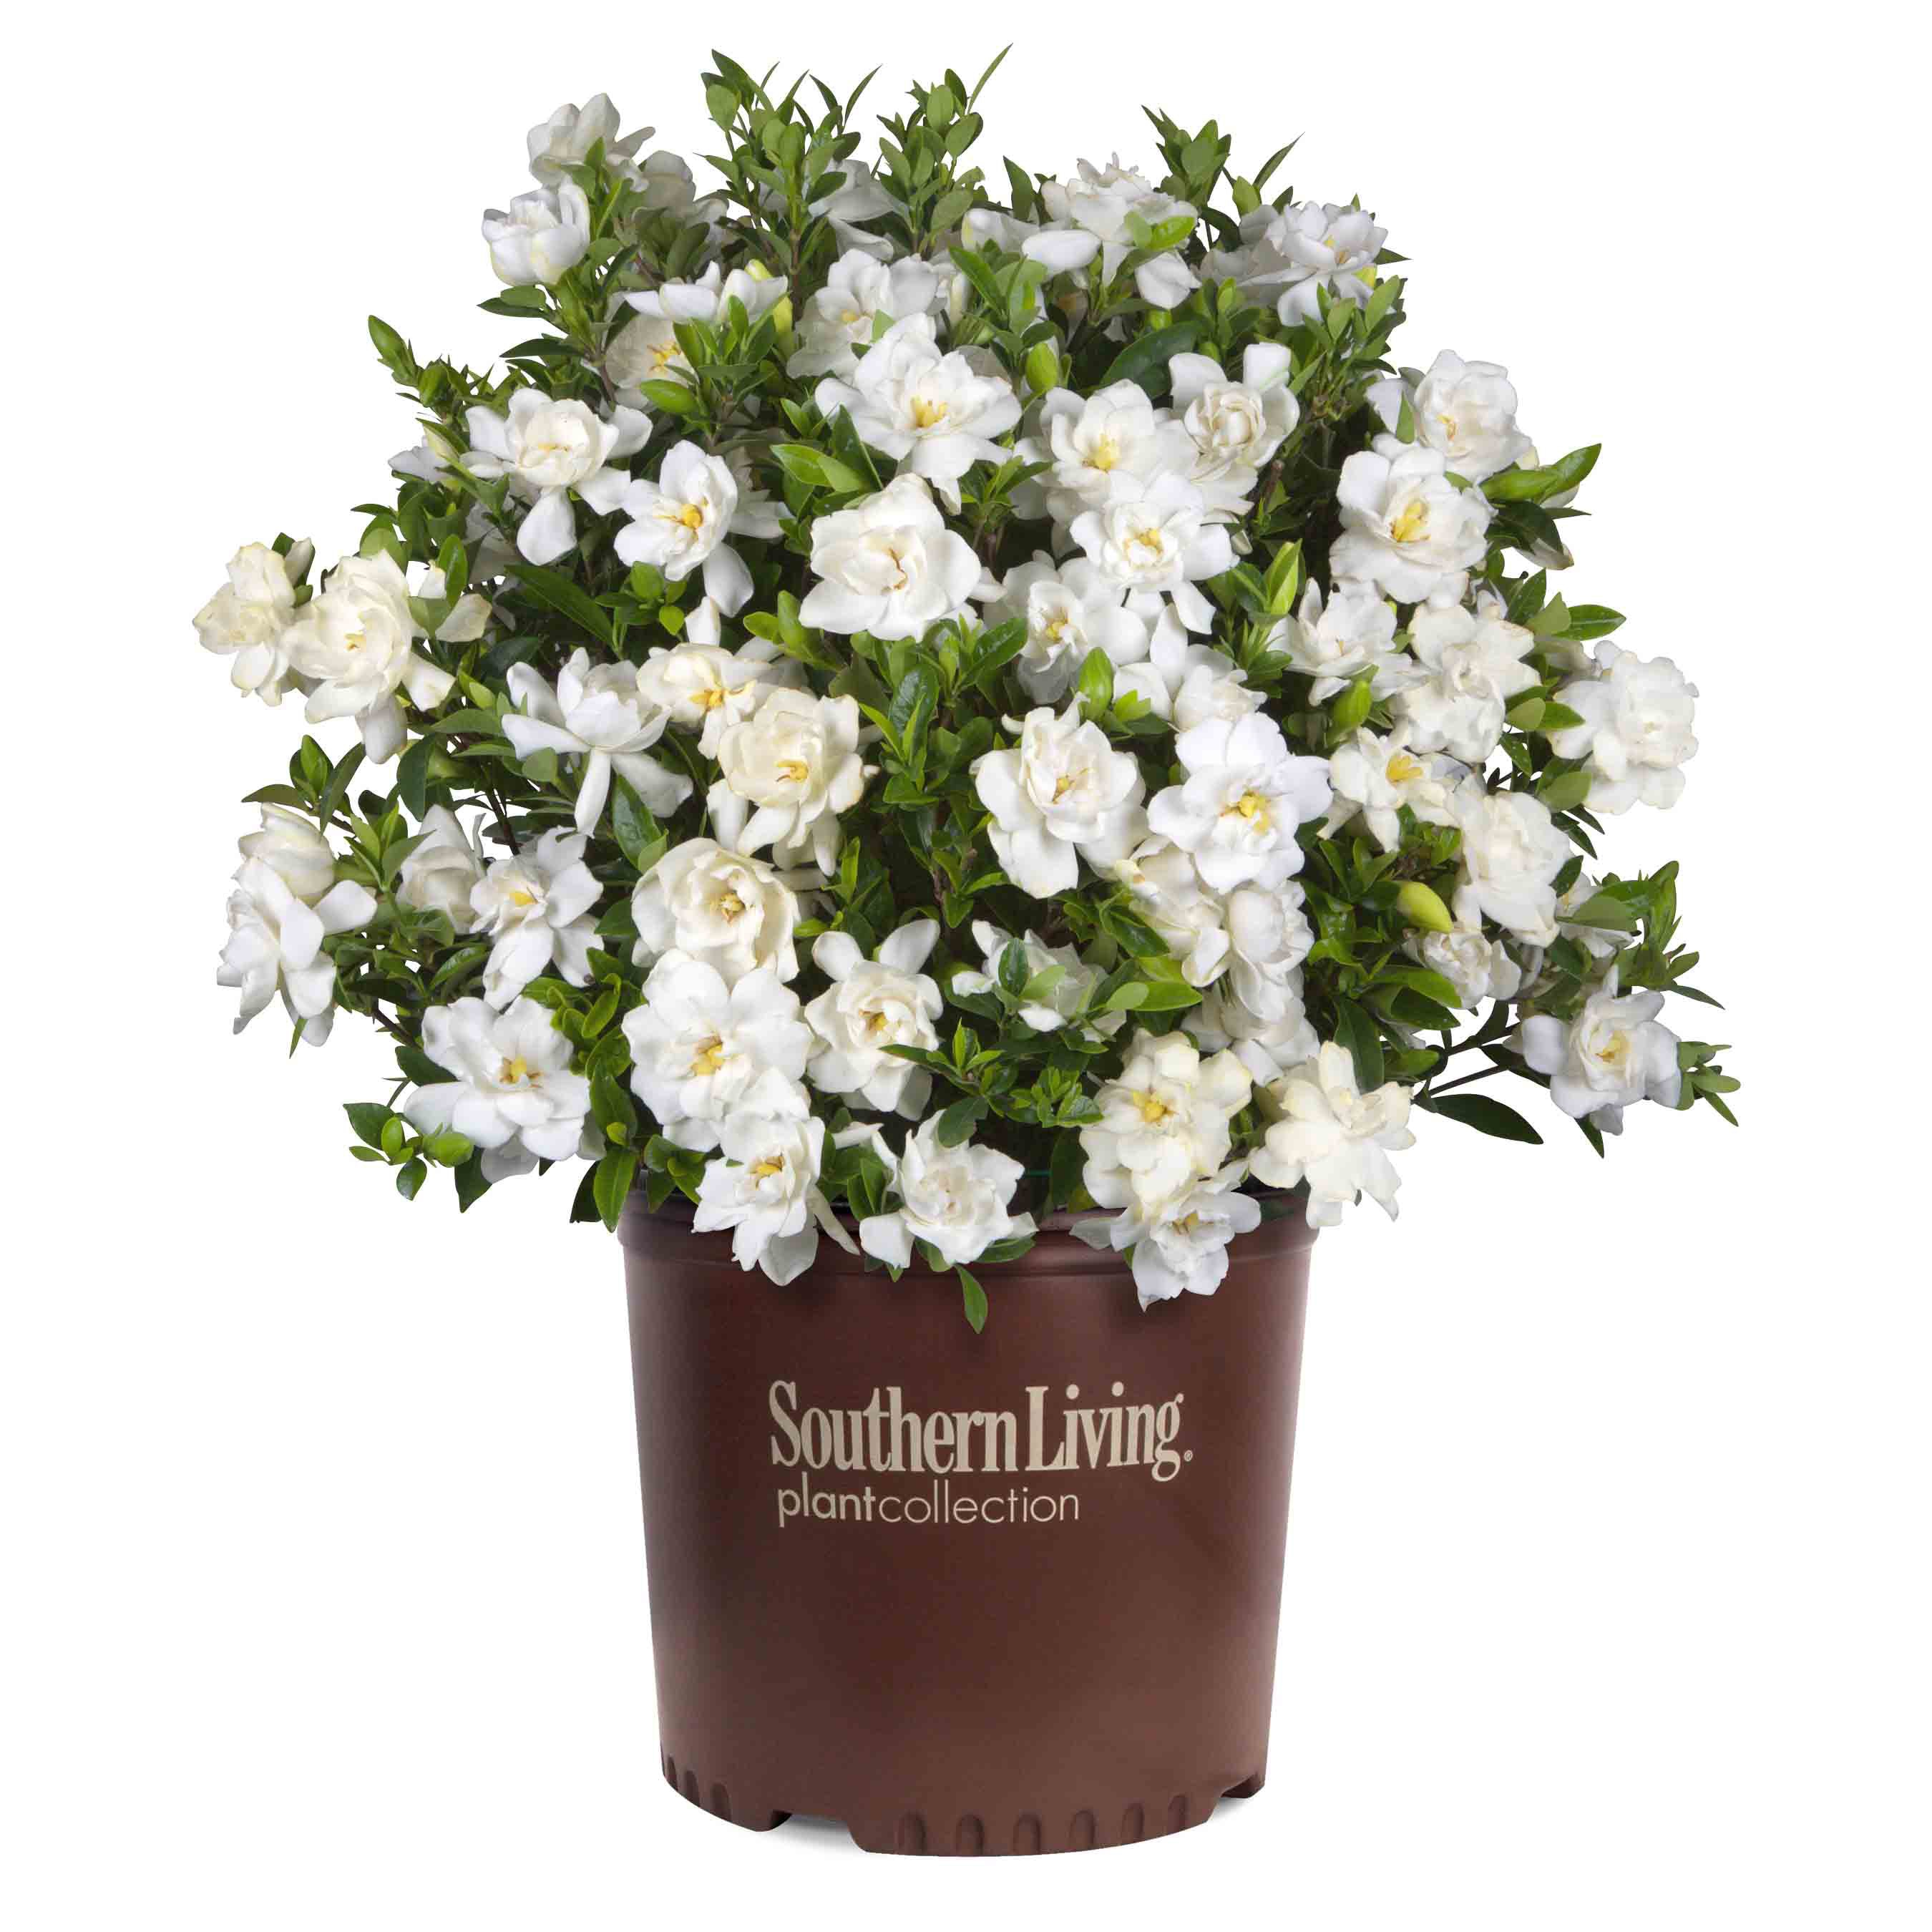 Southern Living 20.20 Quart White Gardenia Flowering Shrub in Pot in ...